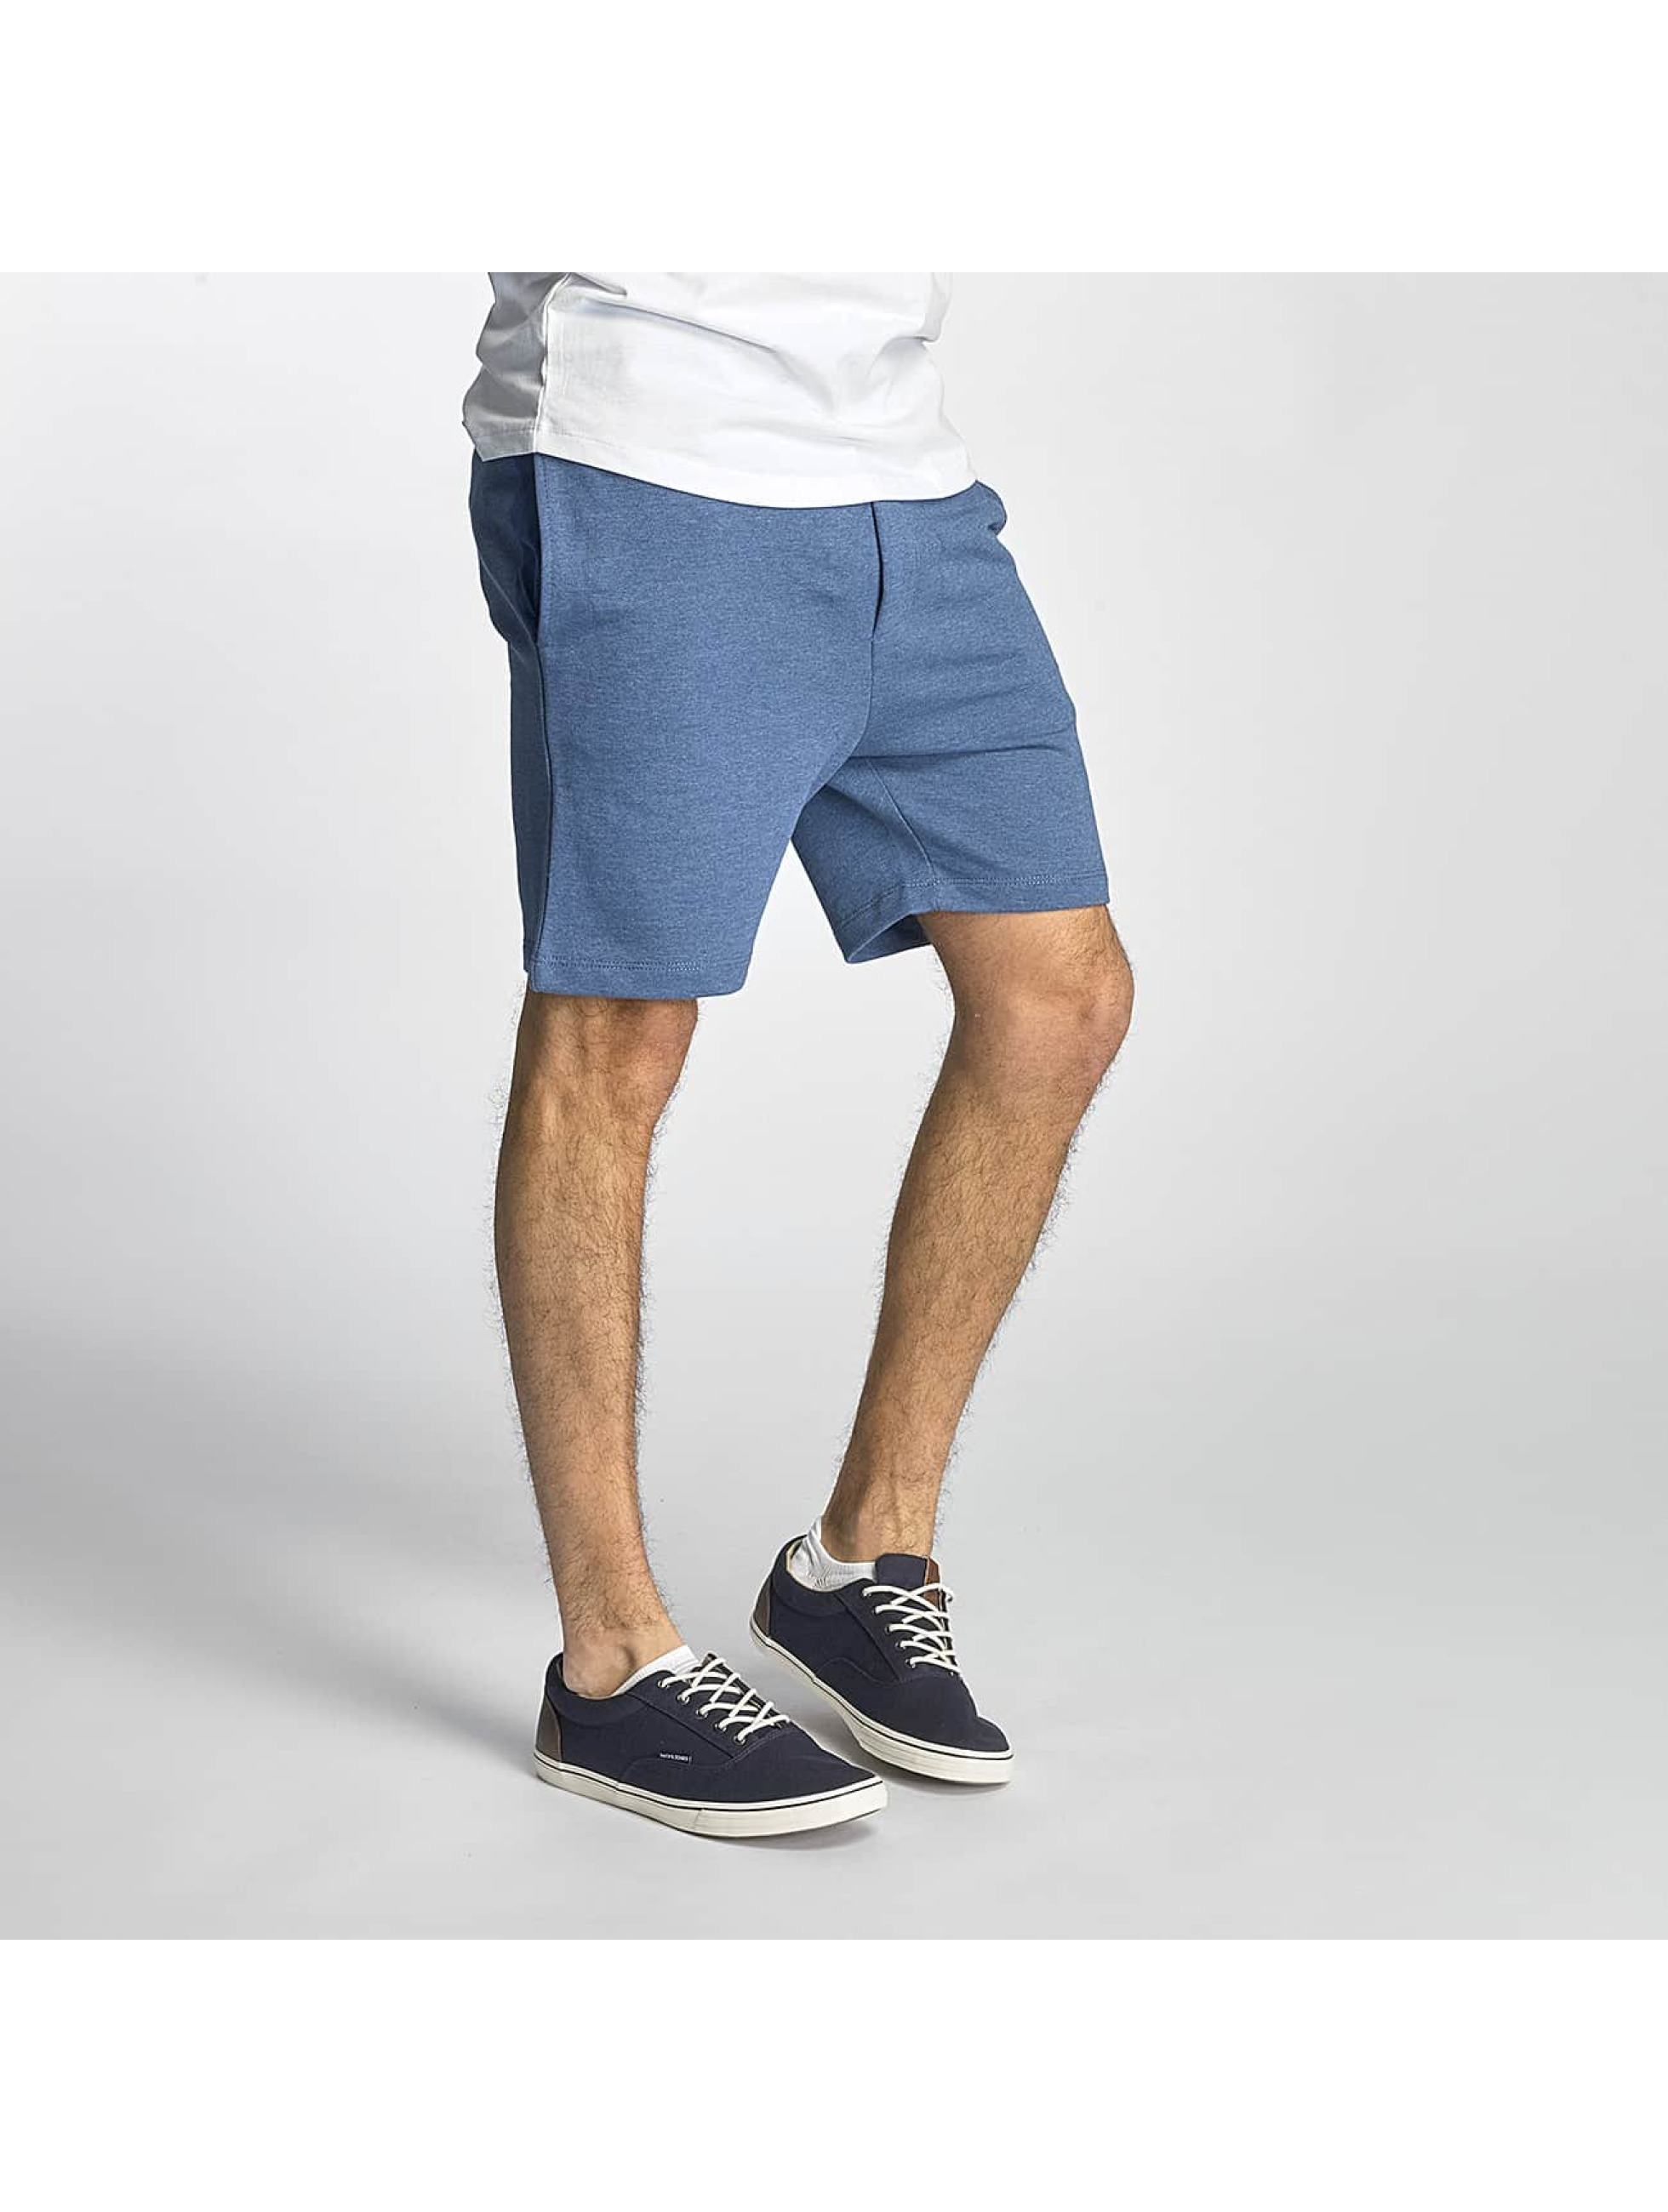 Jack & Jones broek / shorts jorNewhouston in blauw